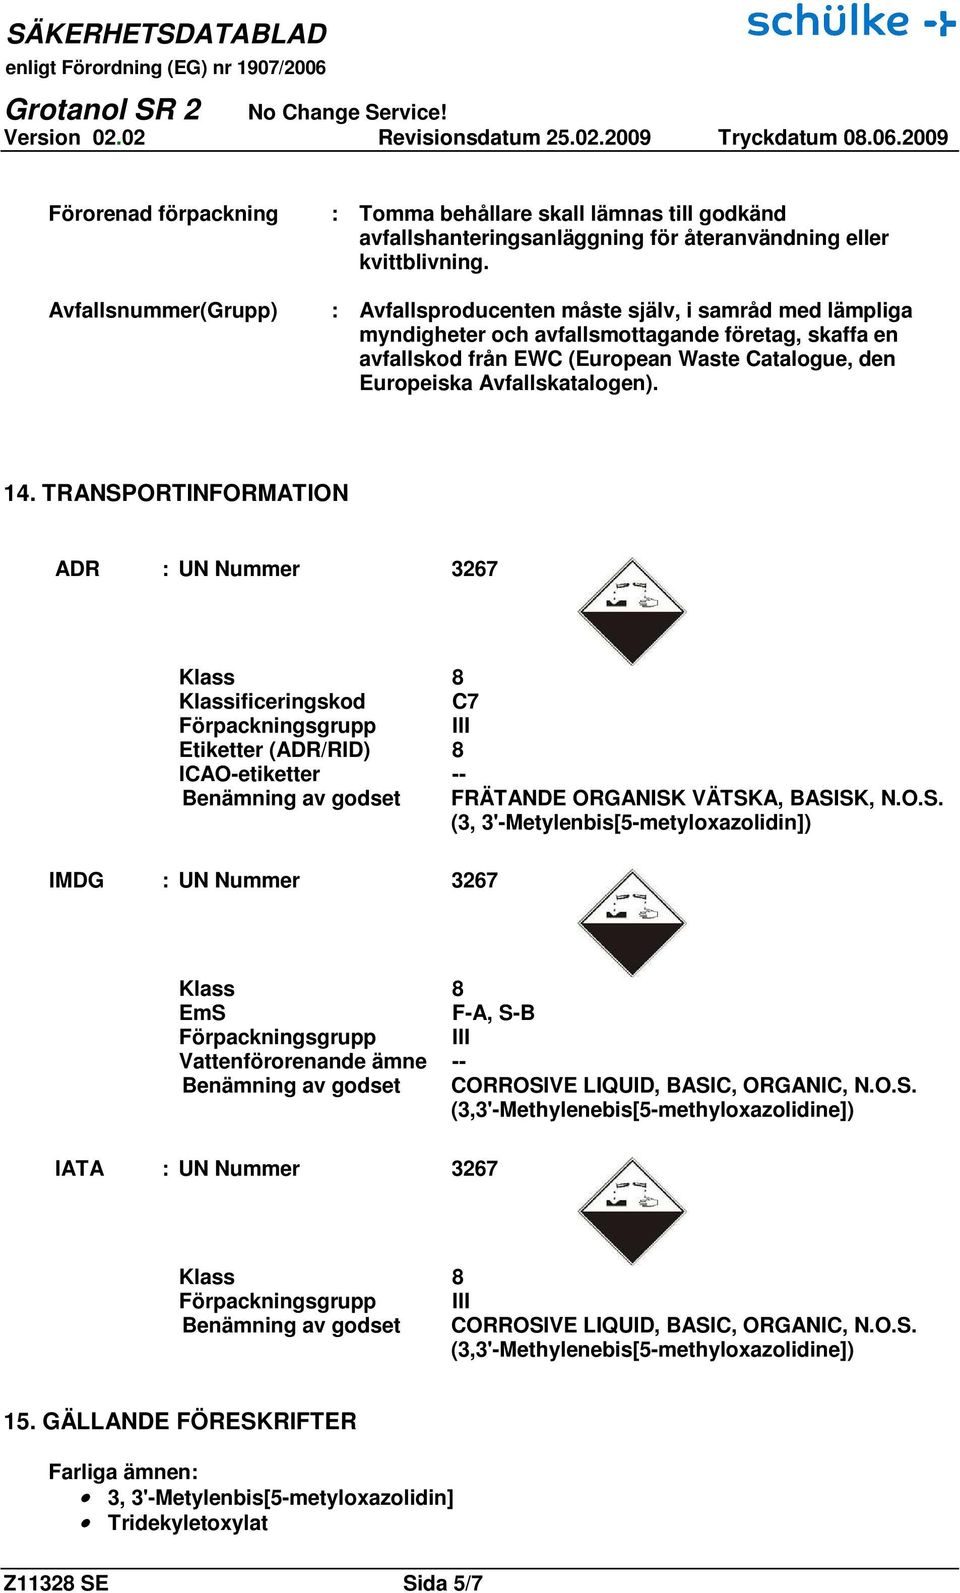 TRANSPORTINFORMATION ADR : UN Nummer 3267 Klass 8 Klassificeringskod C7 Förpackningsgrupp III Etiketter (ADR/RID) 8 ICAO-etiketter -- Benämning av godset FRÄTANDE ORGANISK VÄTSKA, BASISK, N.O.S. (3, 3'-Metylenbis[5-metyloxazolidin]) IMDG : UN Nummer 3267 Klass 8 EmS F-A, S-B Förpackningsgrupp III Vattenförorenande ämne -- Benämning av godset CORROSIVE LIQUID, BASIC, ORGANIC, N.